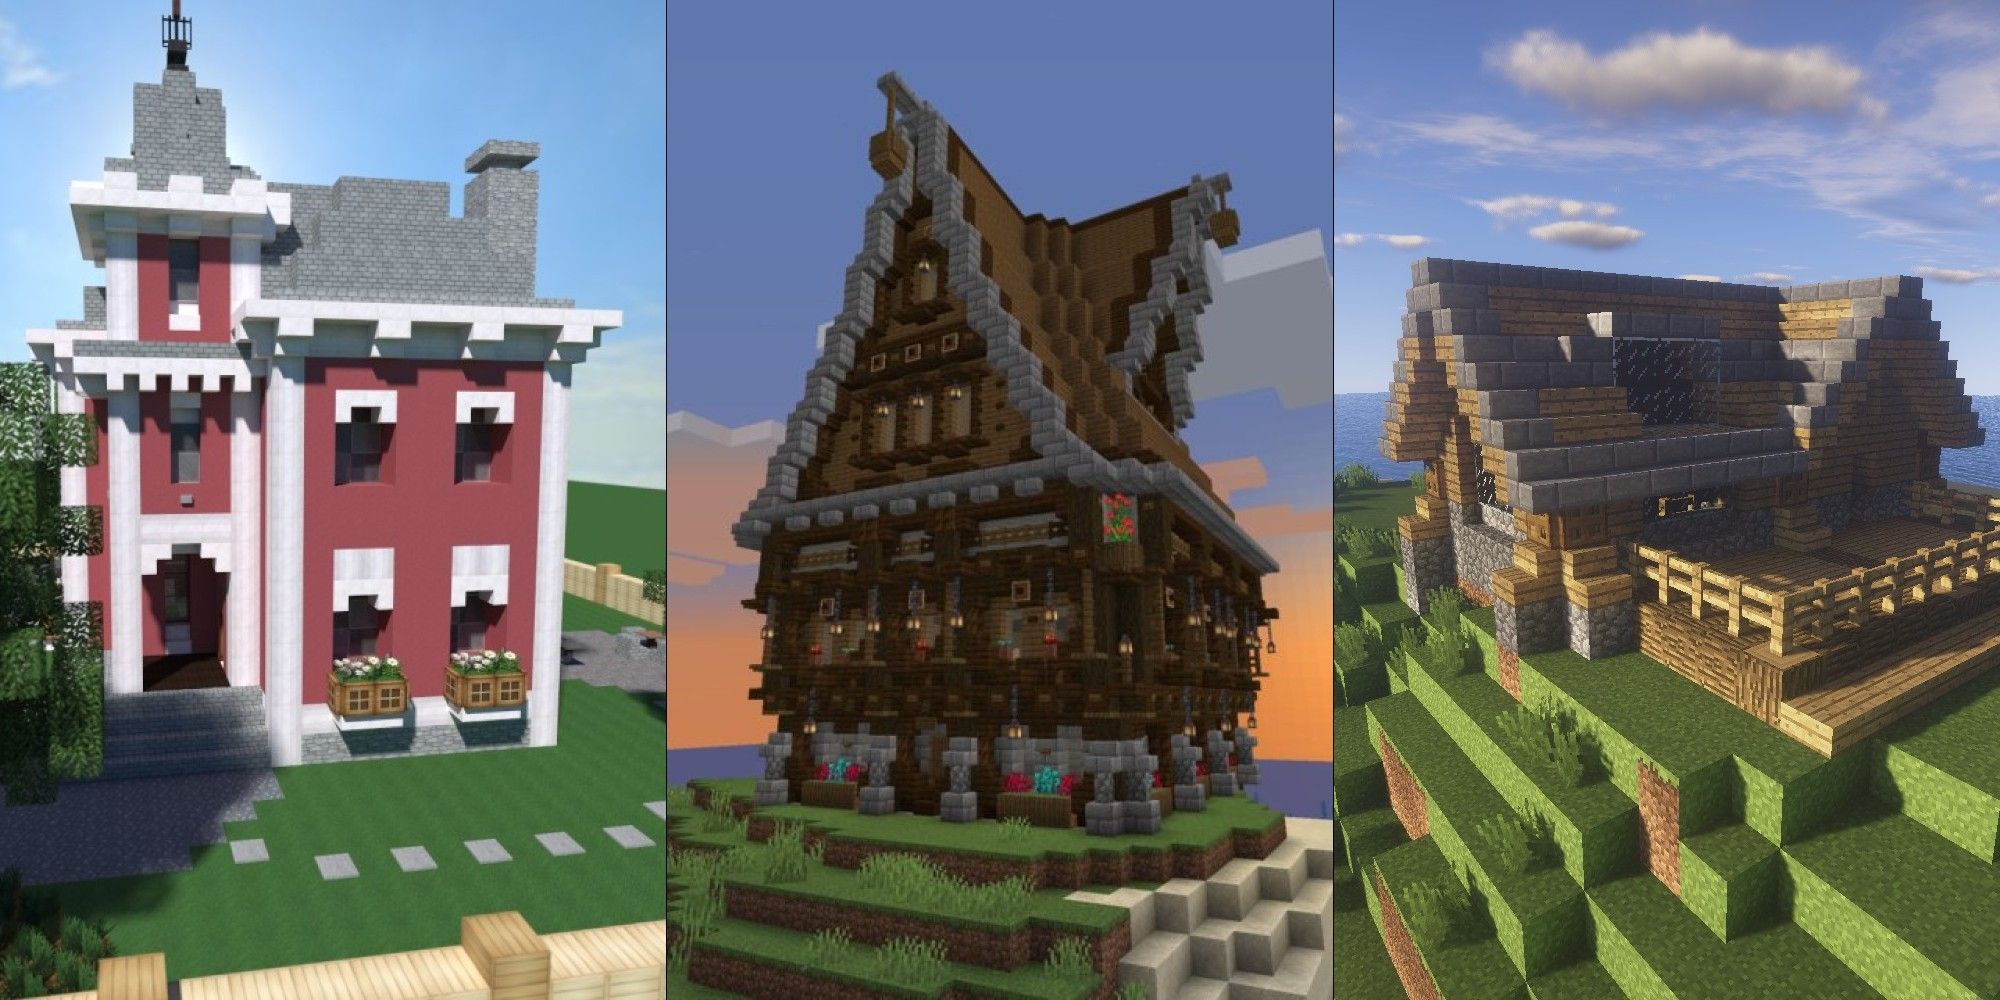 Ein geteiltes Bild mit drei verschiedenen Minecraft-Häusern mit schicken Dächern